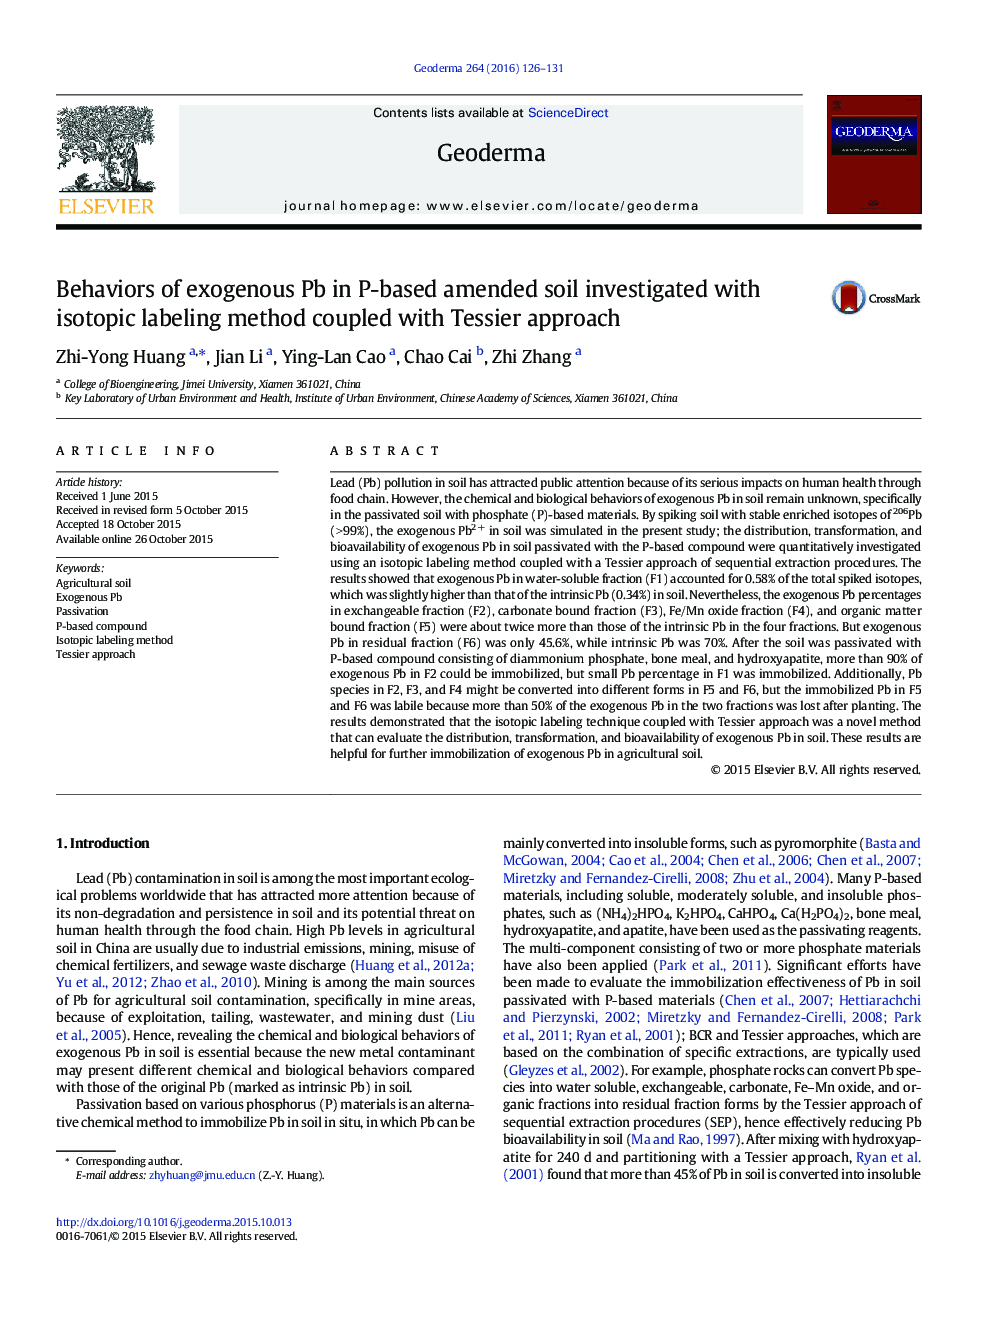 رفتارهای اگزوژن سرب در خاک اصلاح بر اساس P-با روش برچسب گذاری ایزوتوپی همراه با  بررسی رویکرد Tessier